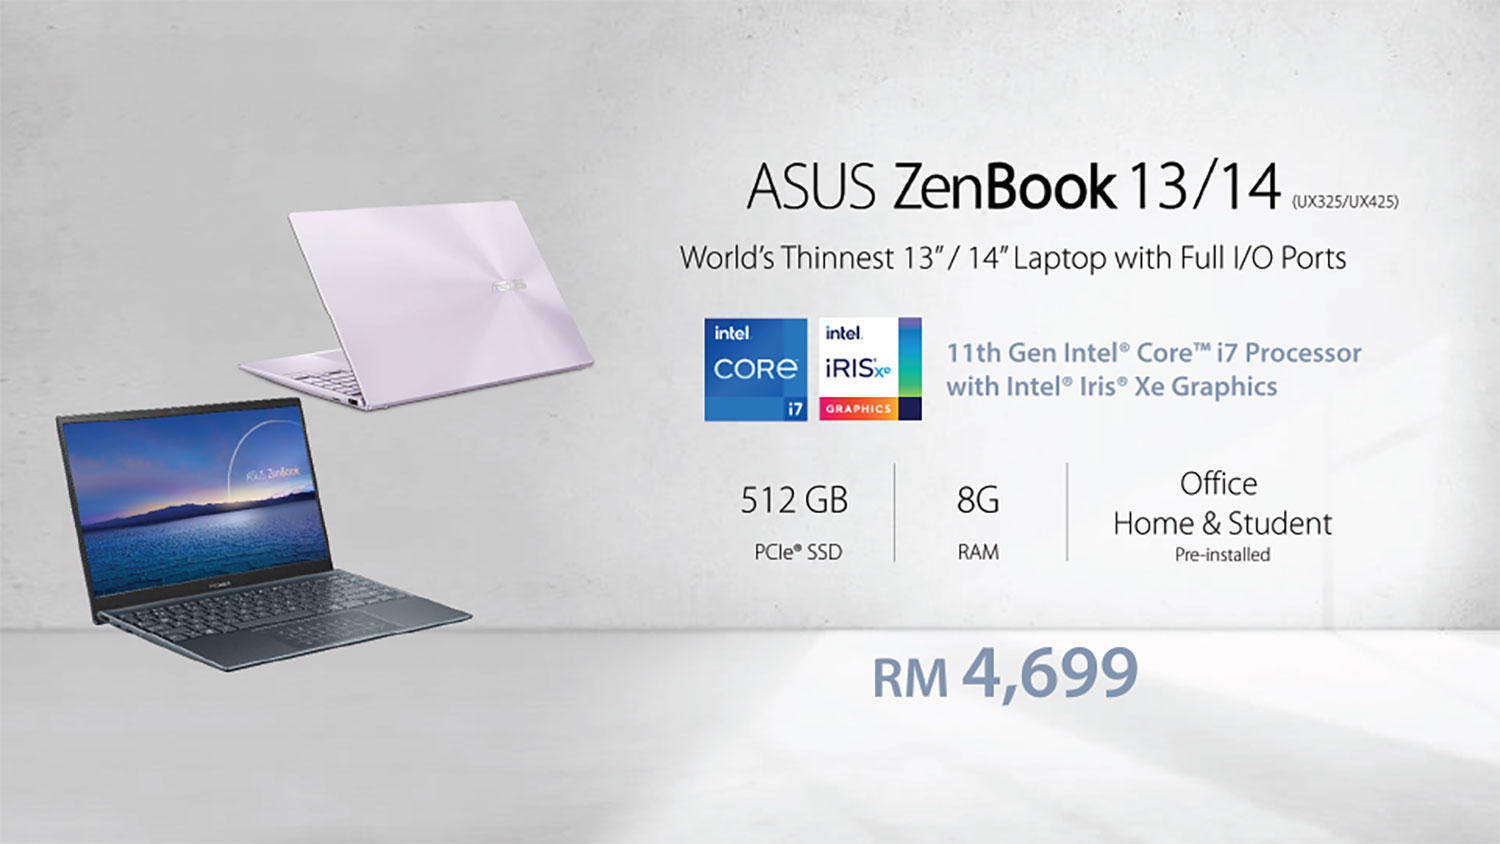 ASUS 11th Gen Intel Core Processor_ZenBook 13 (UX325) and ZenBook 14 (UX425) Price_1